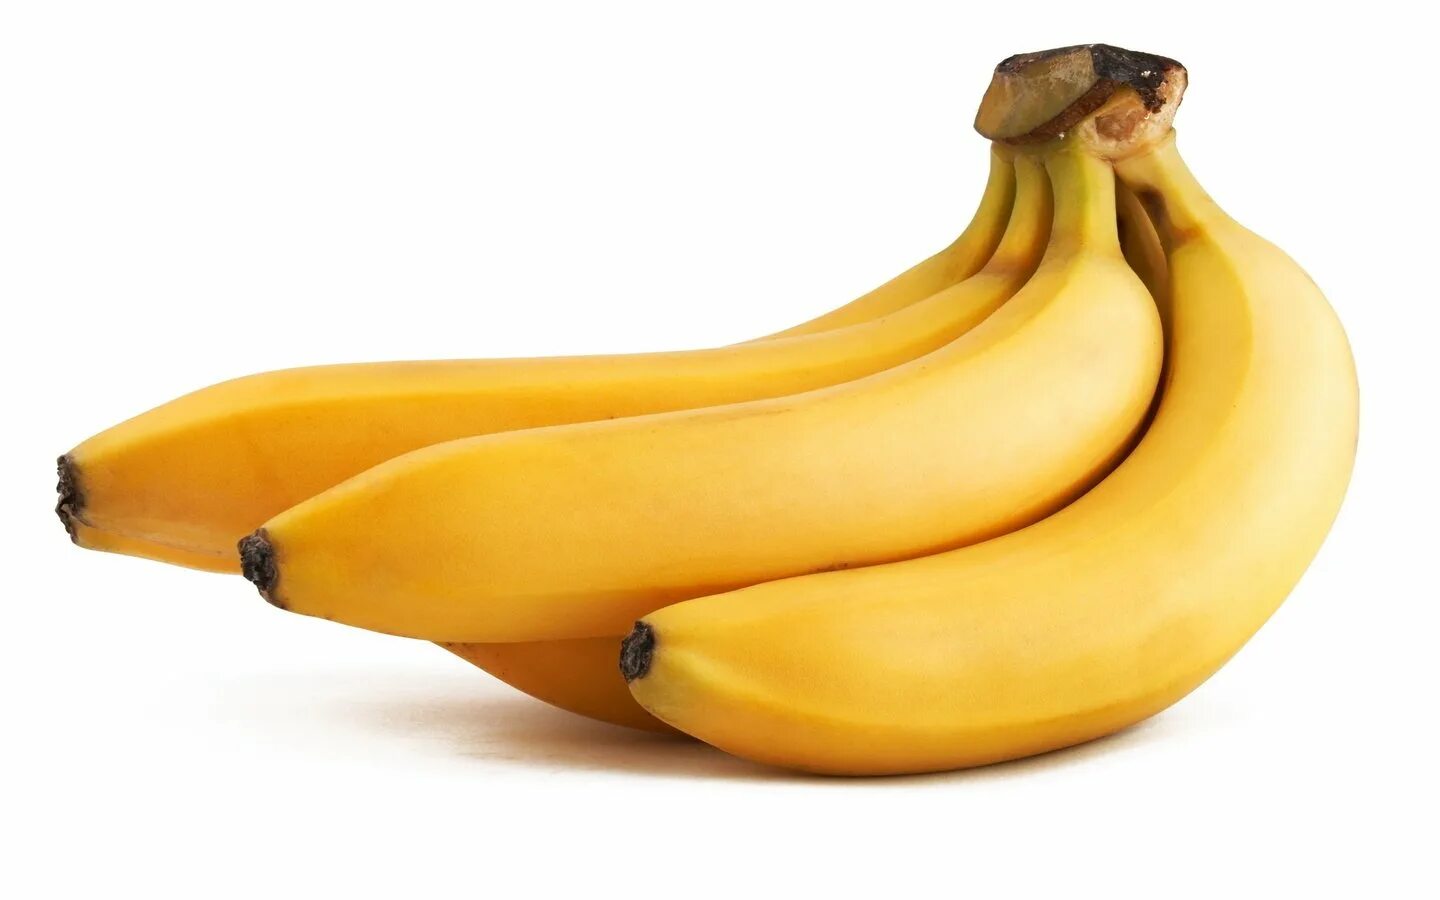 Е бана. Банан на белом фоне. Банан на прозрачном фоне. Белый банан. Банан картинка.